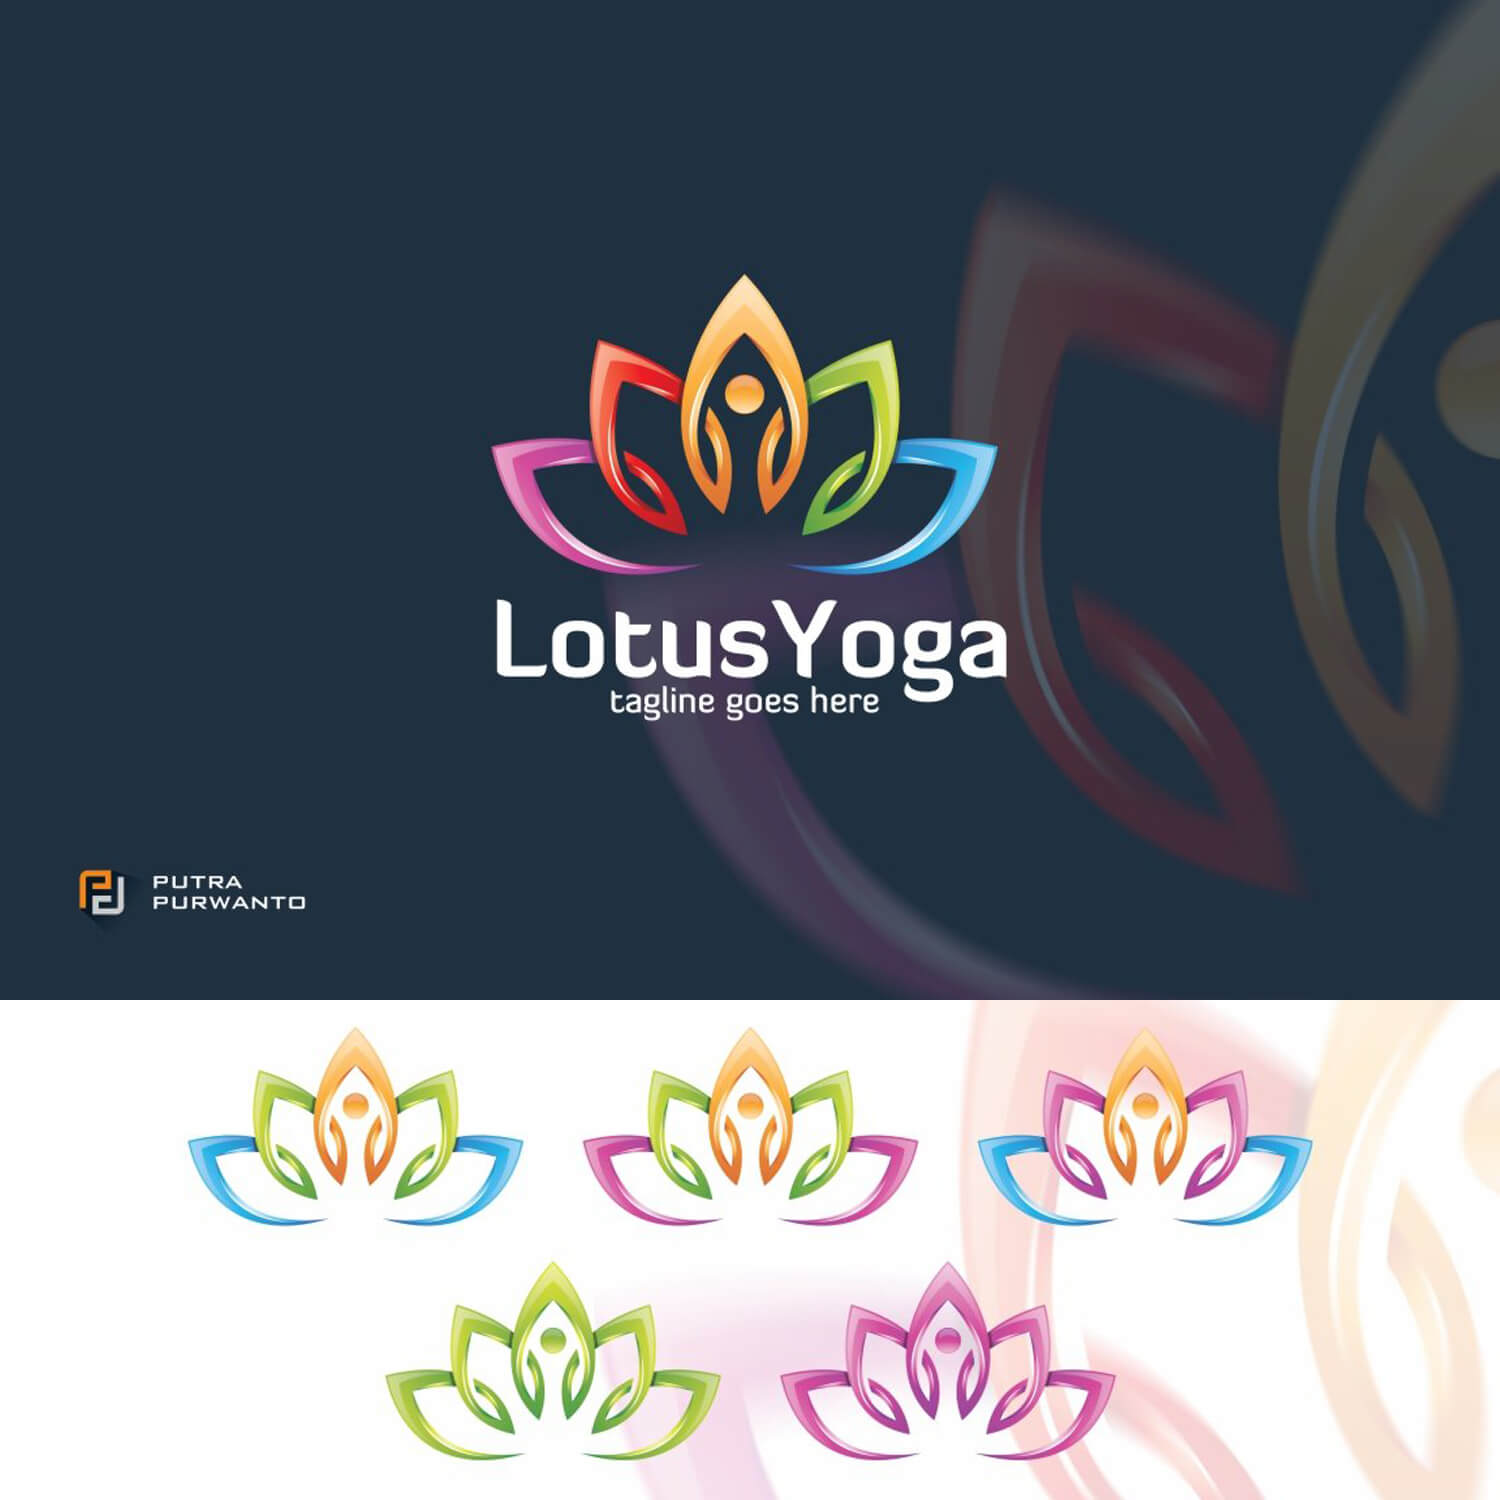 Logo Yoga đơn giản nhưng tinh tế đã trở thành một biểu tượng quen thuộc trong giới yoga. Hãy cùng tìm hiểu về logo này và cách nó thể hiện giá trị và tính chất của yoga. Xem hình ảnh để có thêm thông tin và cảm nhận sự thanh tịnh khi luyện tập yoga. 